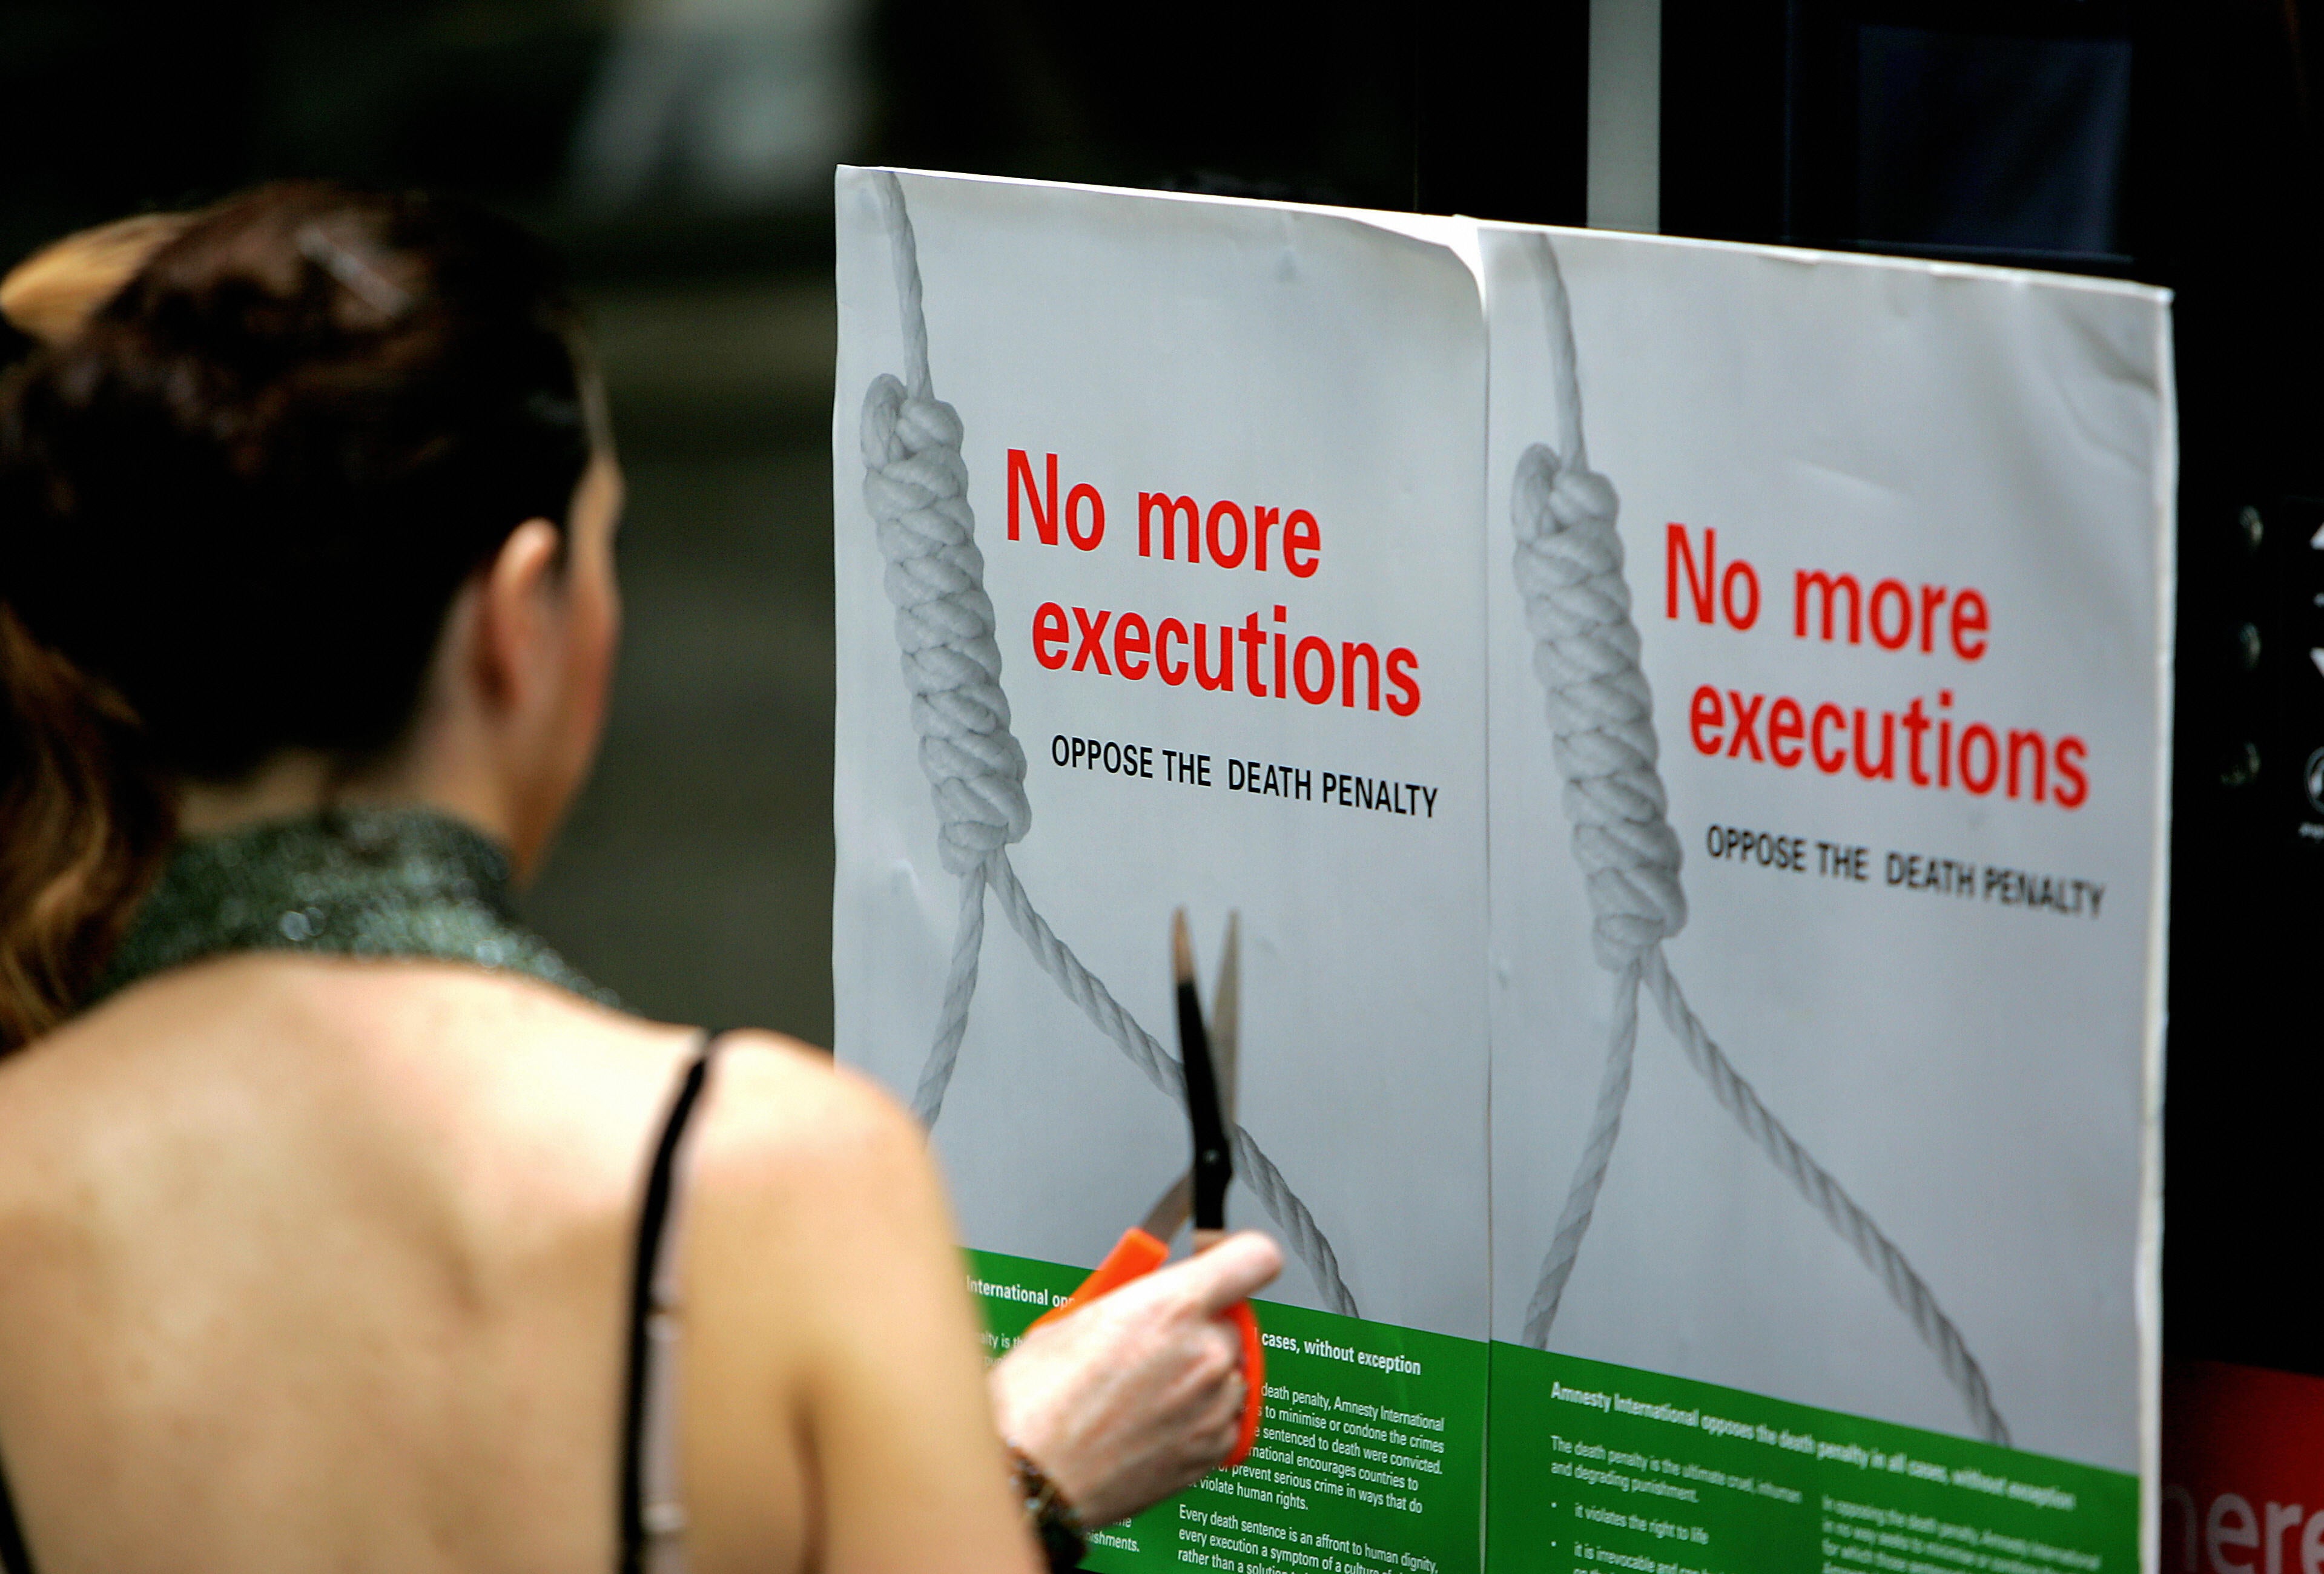 Singapore executes third prisoner in just 8 days